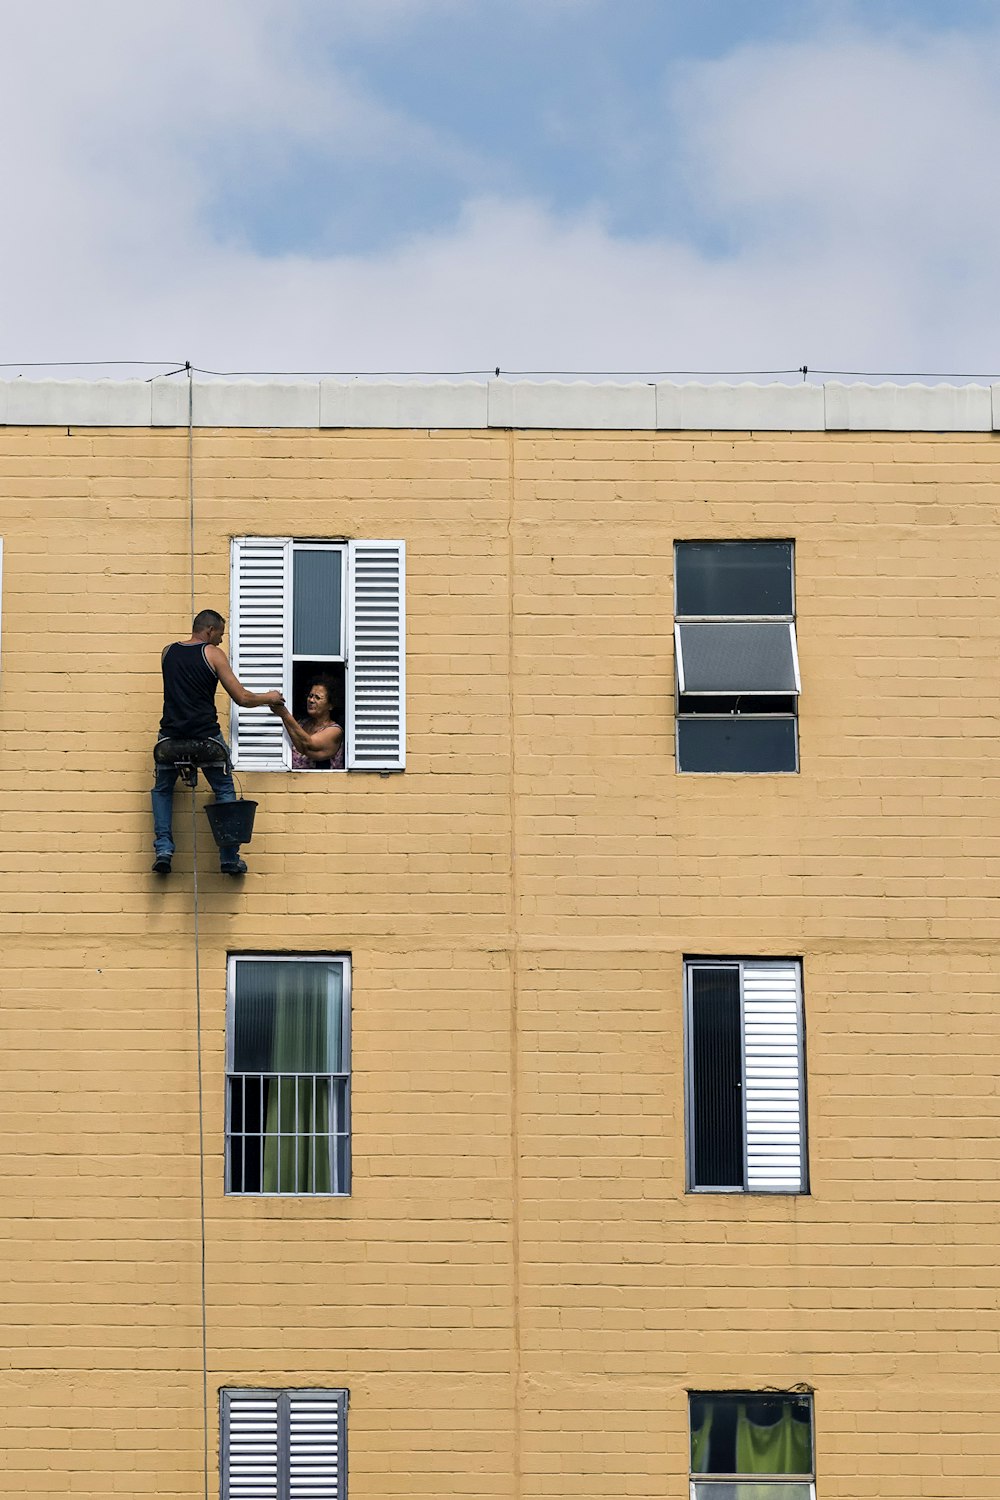 Mann hängt tagsüber an Gebäude in der Nähe von Frau im Fenster